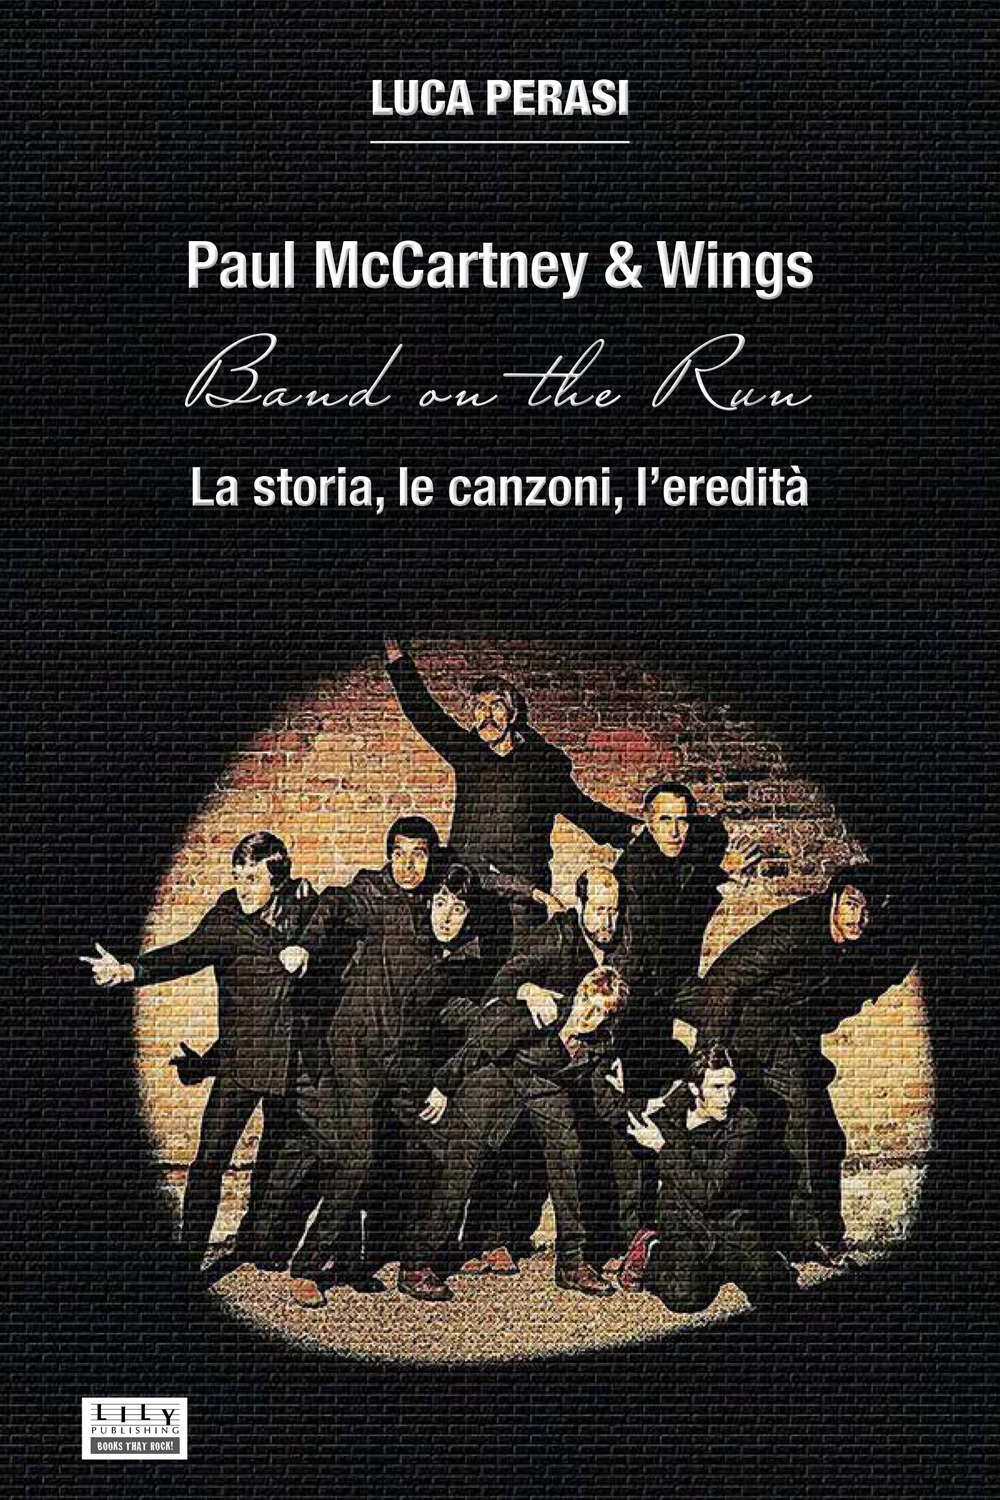 Paul McCartney & Wings: Band on the Run. La storia, le canzoni, l'eredità